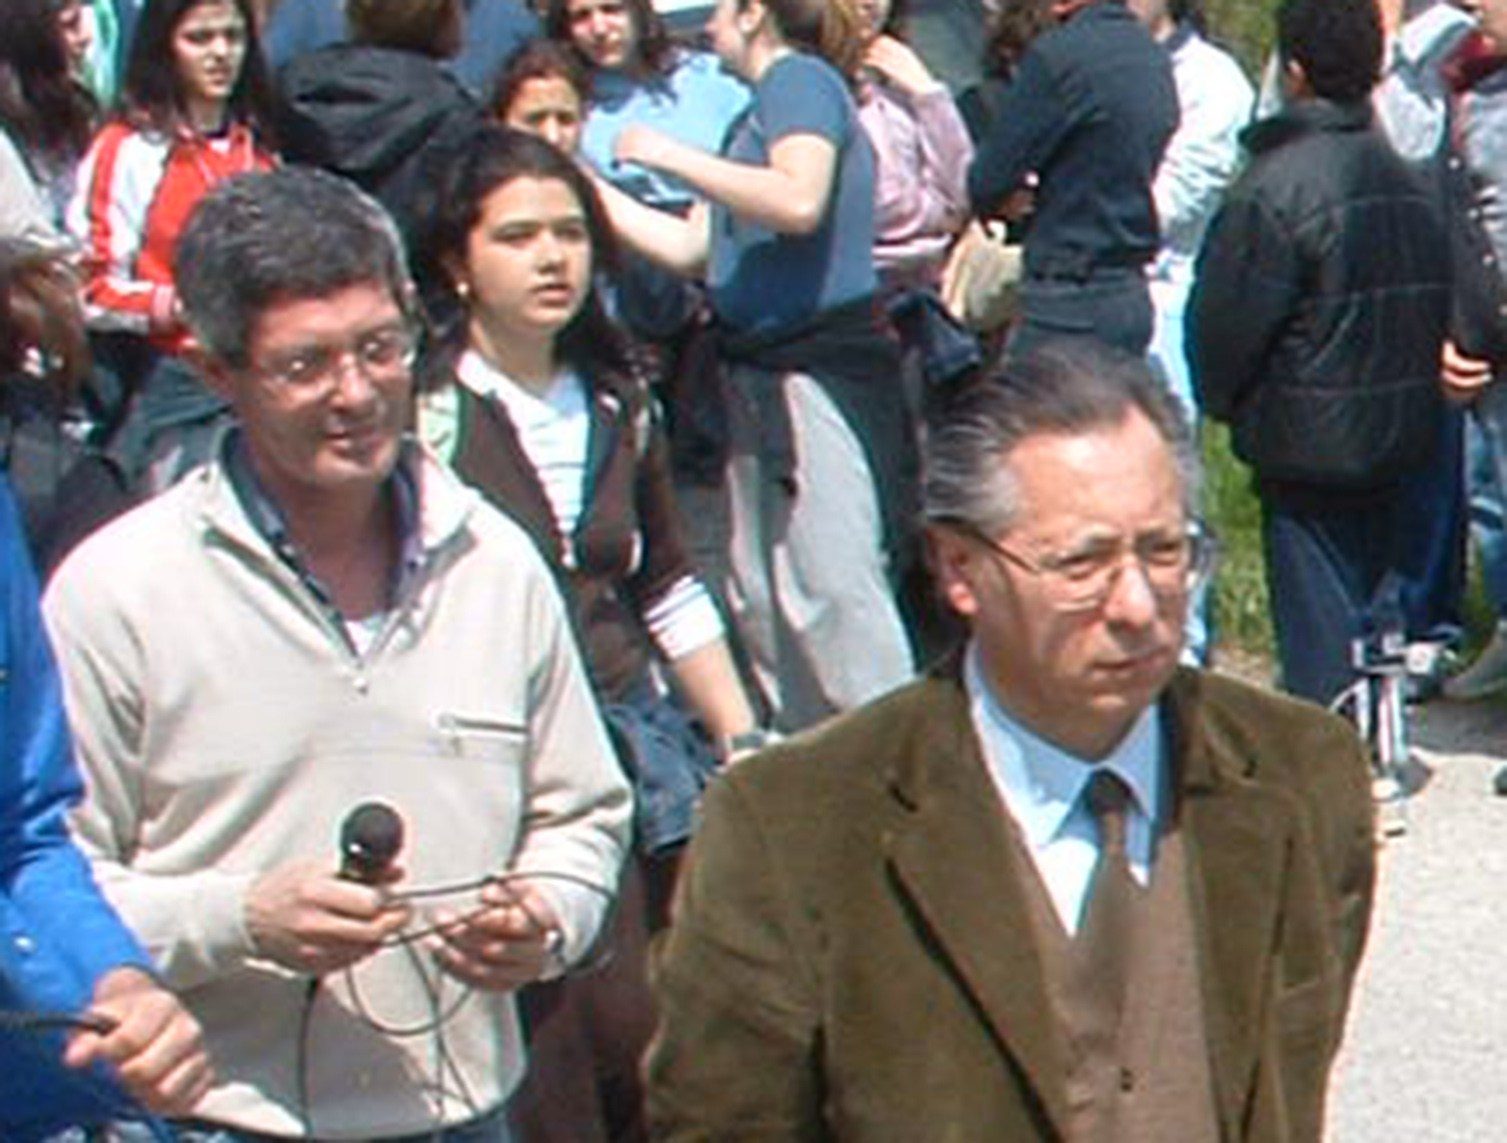 Di CIntio insieme al preside Amicucci durante una manifestazione scolastica (2)